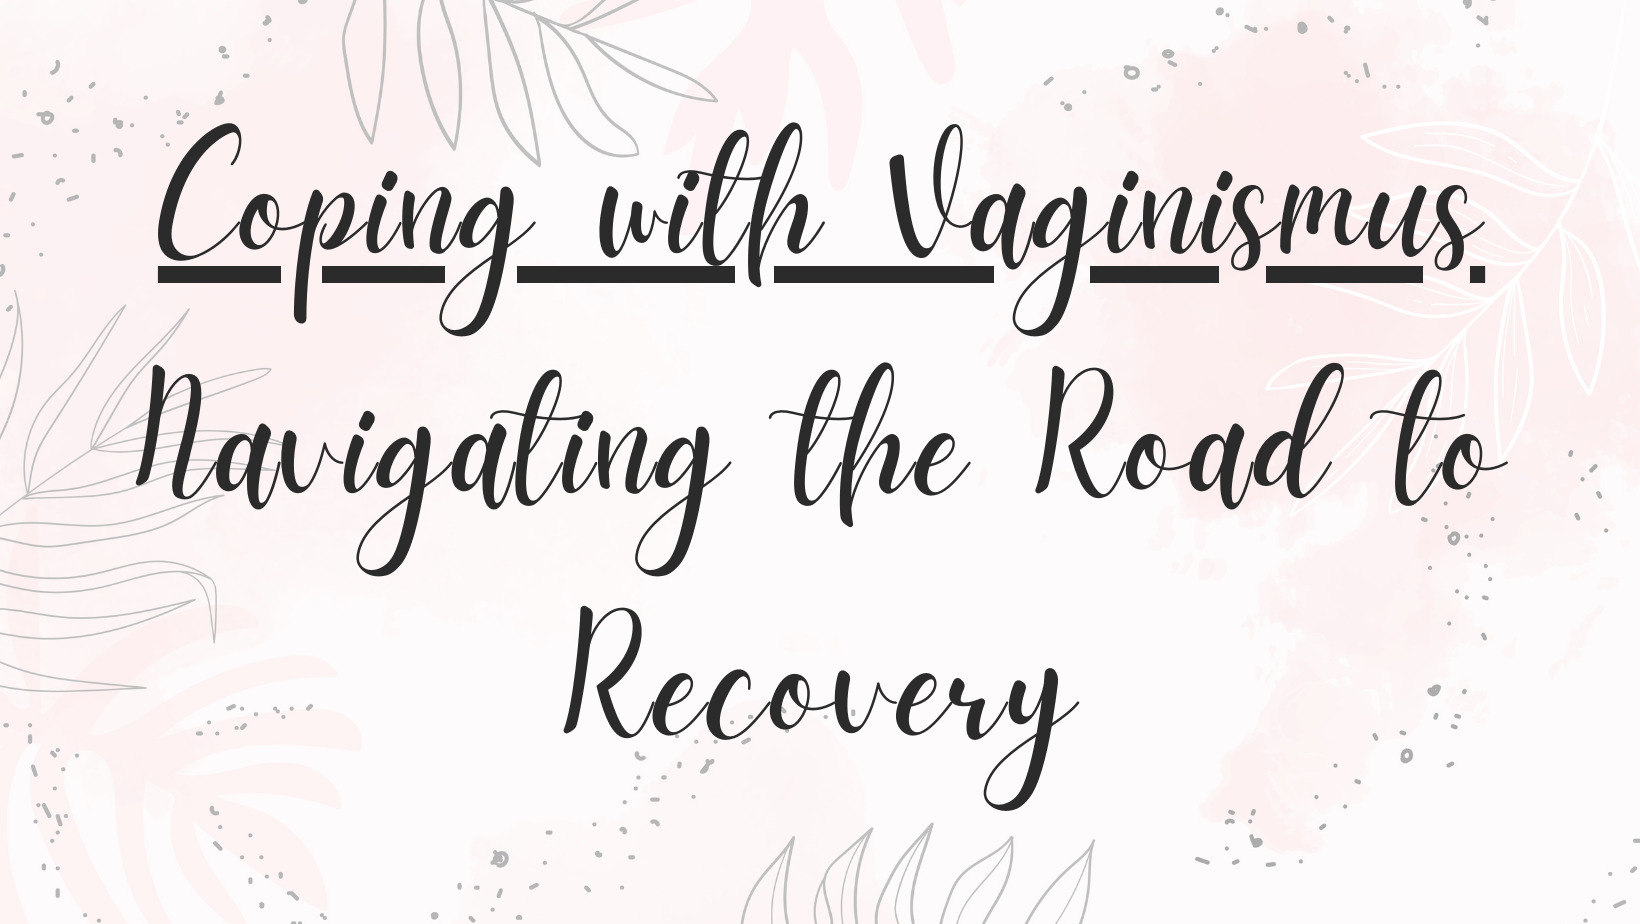 Vaginismus에 대처하기 : 회복의 길 탐색